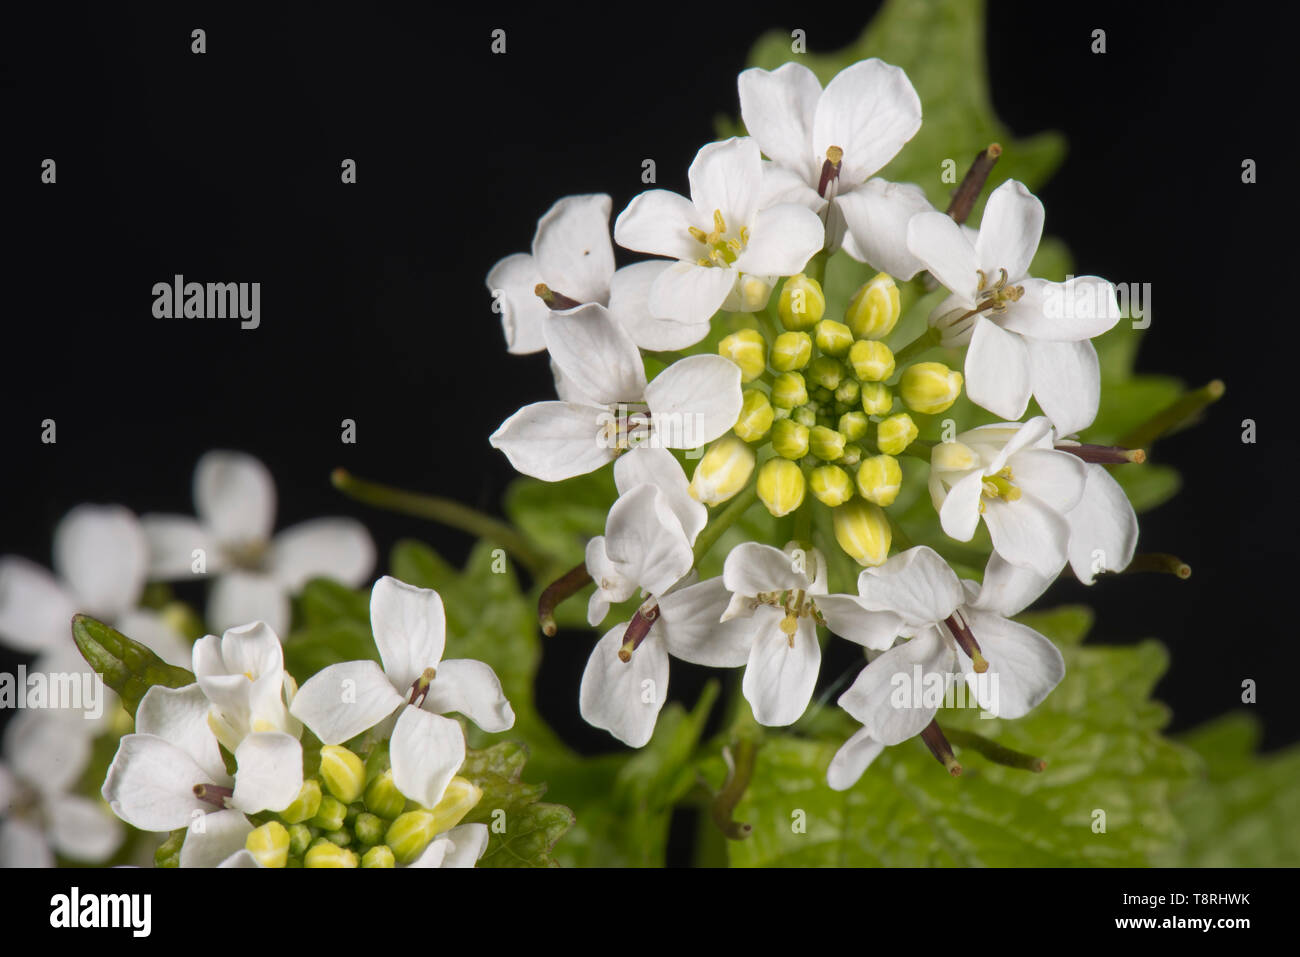 Jack-per-il-hedge o hedge aglio (Alliaria petiolata) bianco aperto parzialmente la testa di fiori e foglie, Berkshire, Aprile Foto Stock